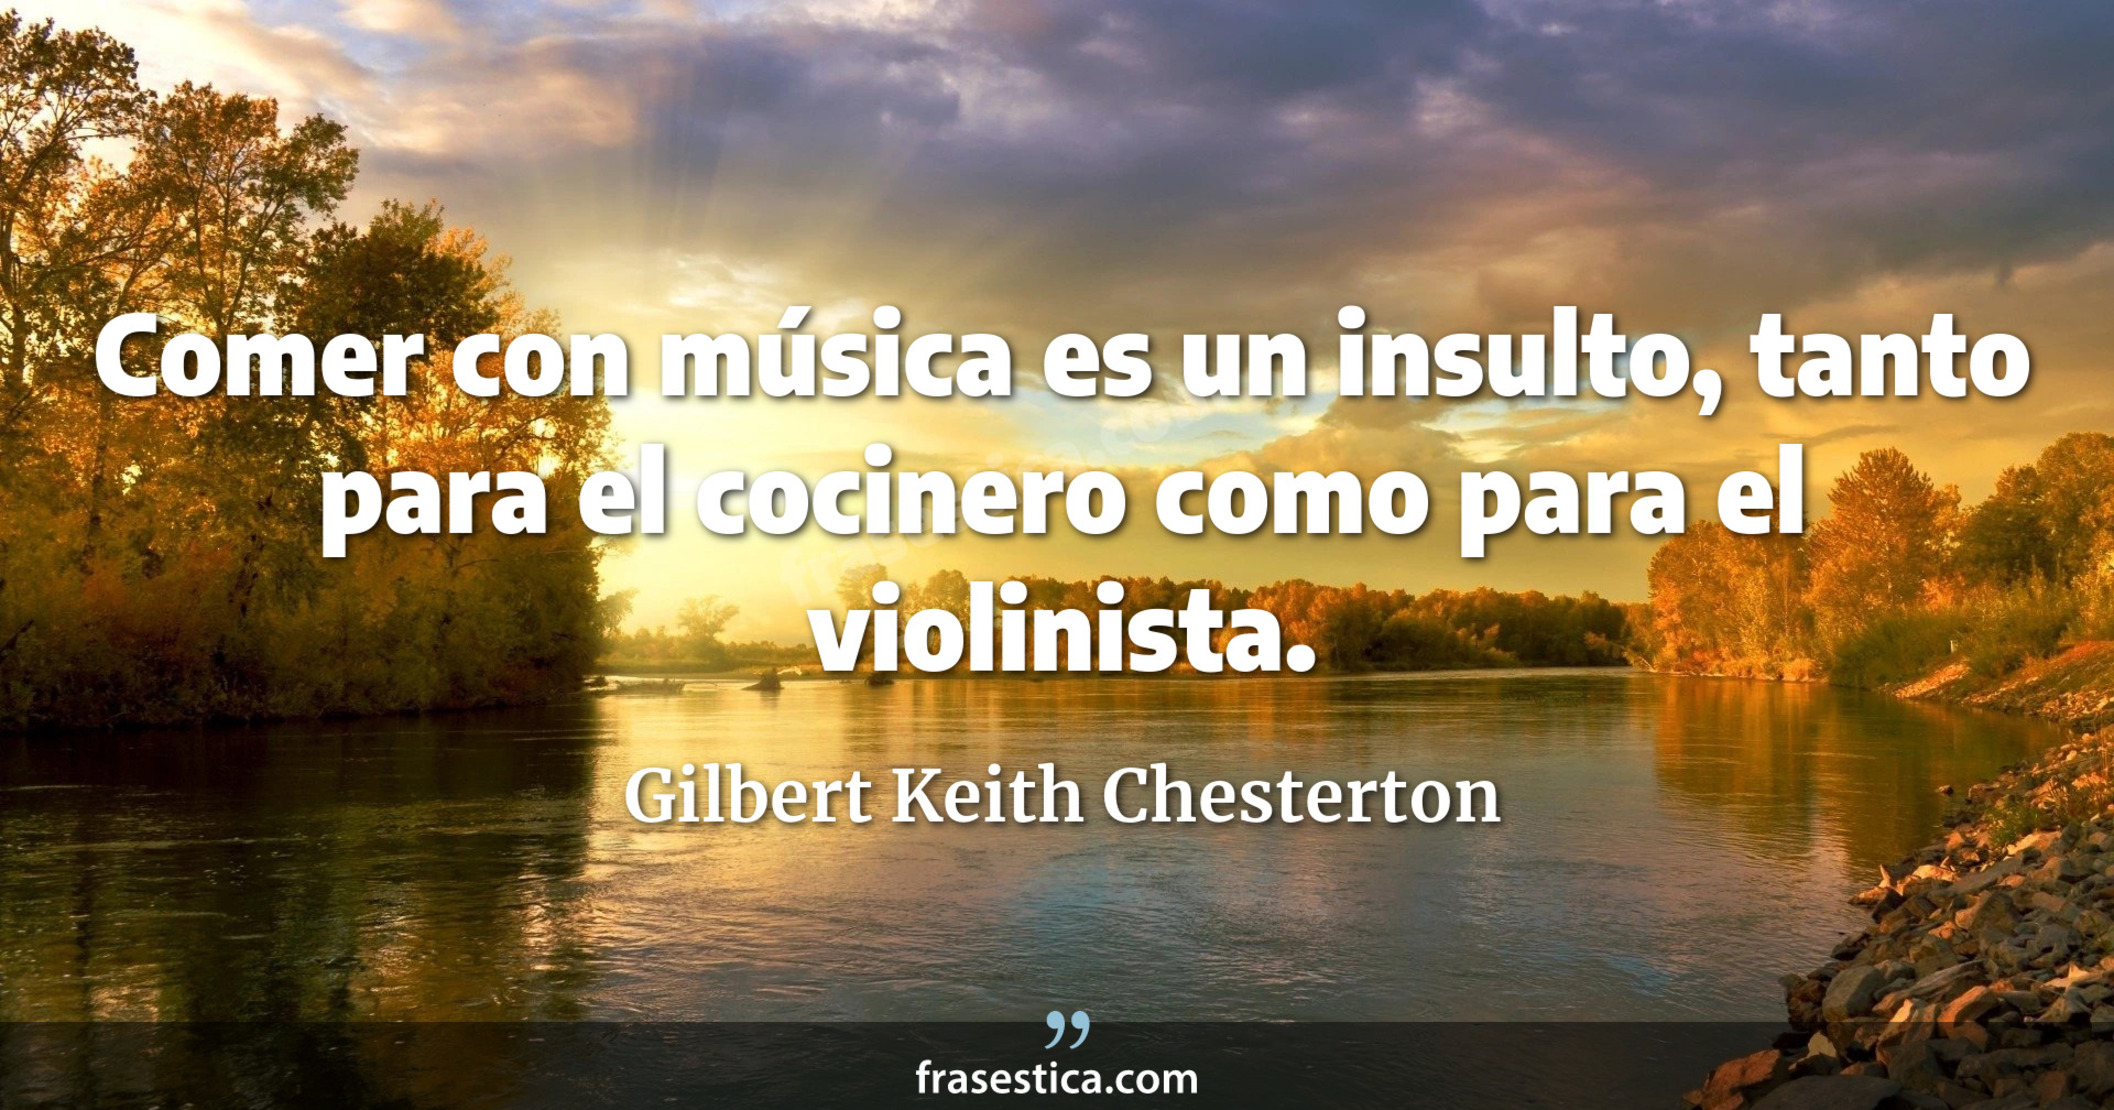 Comer con música es un insulto, tanto para el cocinero como para el violinista. - Gilbert Keith Chesterton